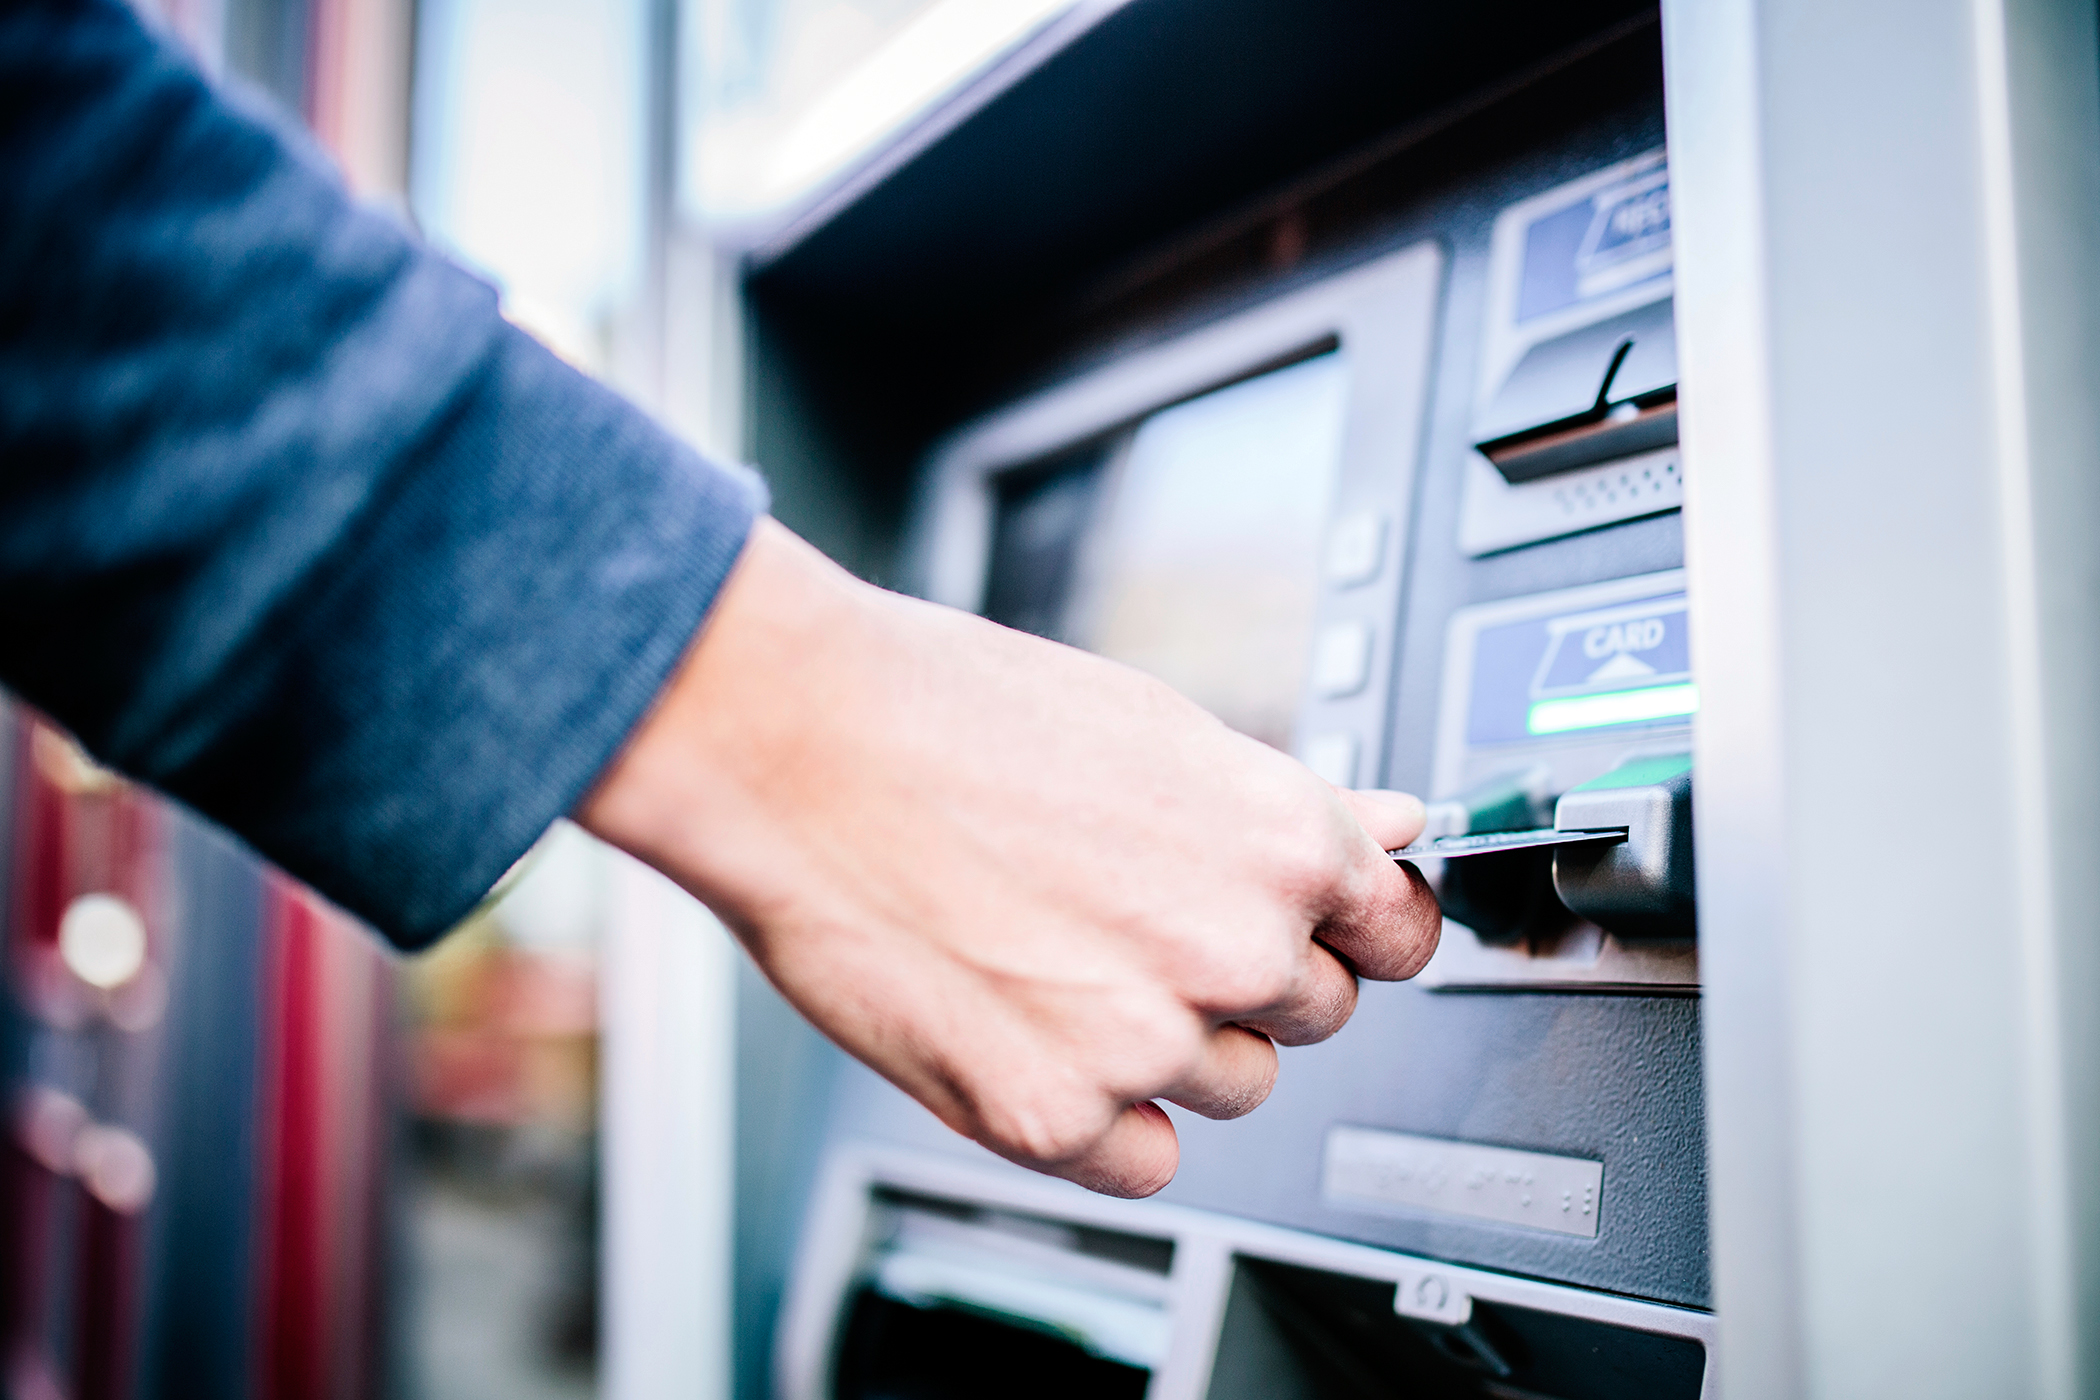 Снятие денег с телефона. Деньги в банкомате. Возле банкомата. Человек около банкомата. Банкомат (ATM).